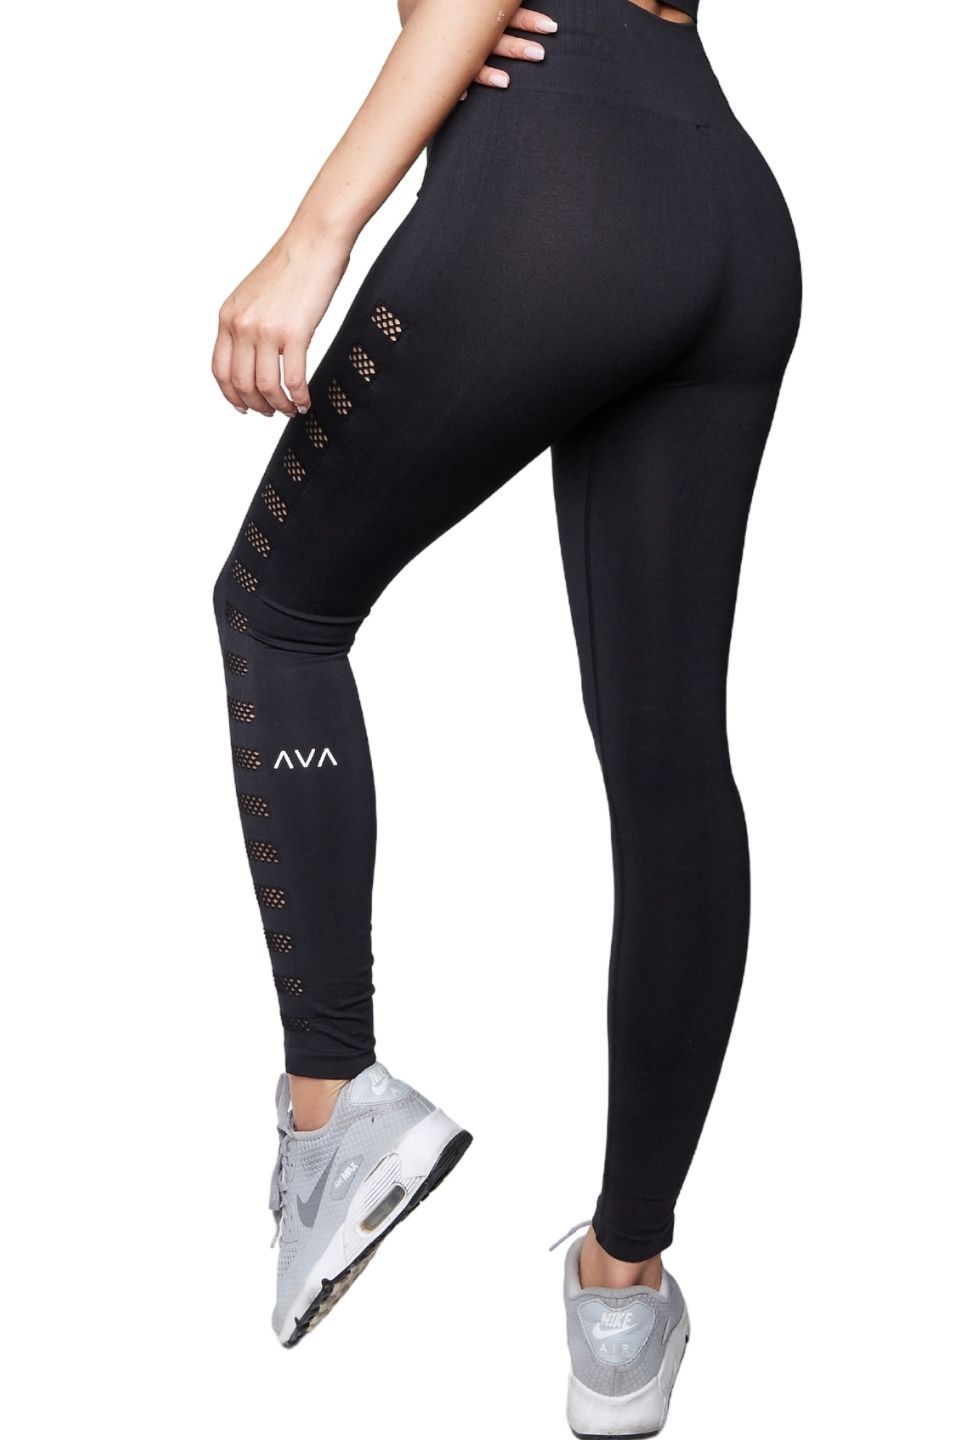 Silvertraq Mesh Cross Leggings Black  Cross leggings, Active wear for  women, Mesh leggings